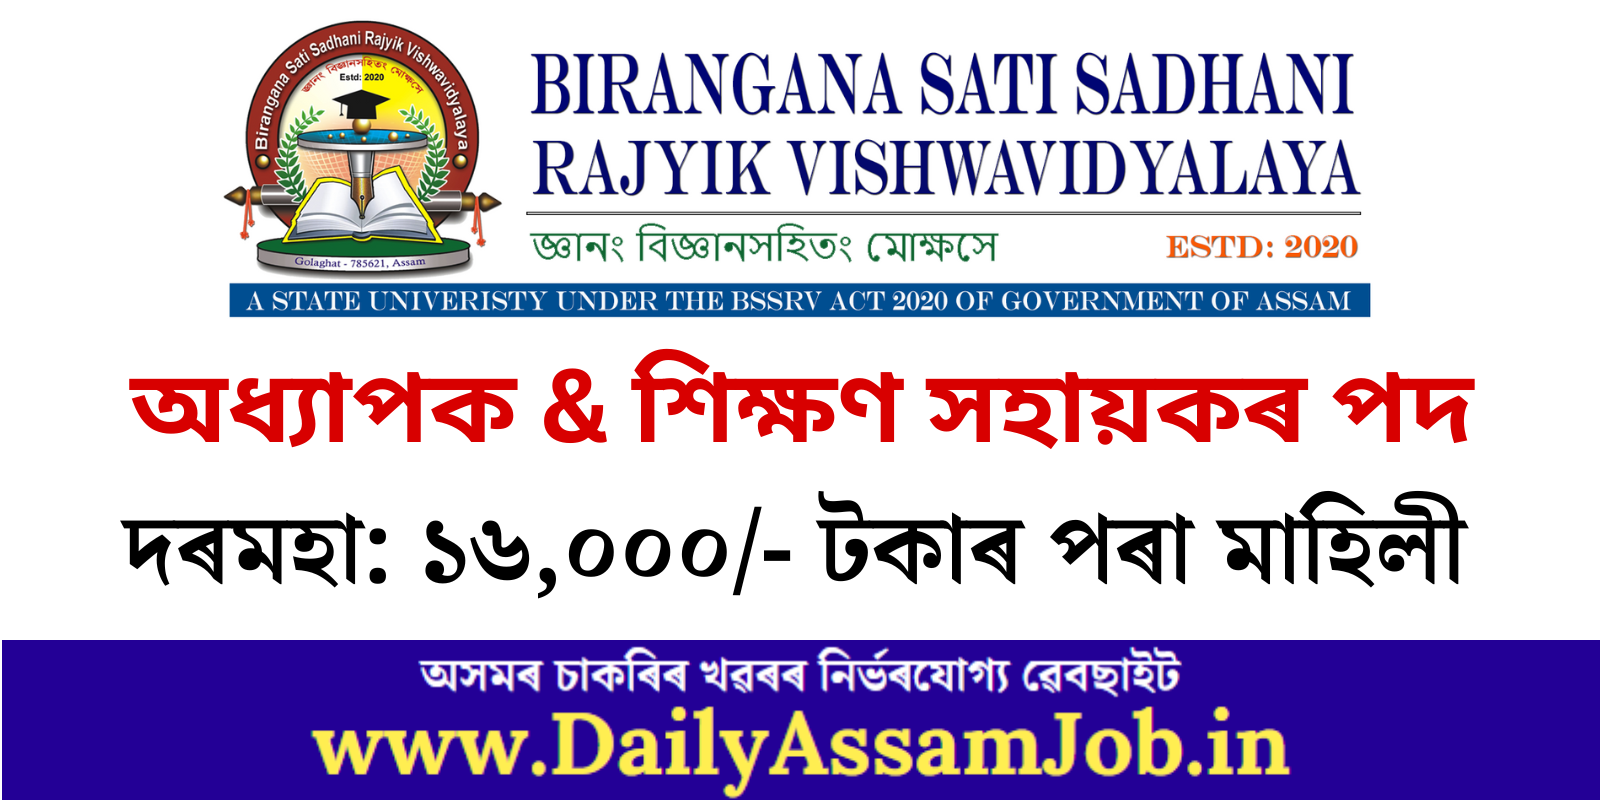 Birangana Sati Sadhani Rajyik Vishwavidyalaya (BSSRV) Recruitment